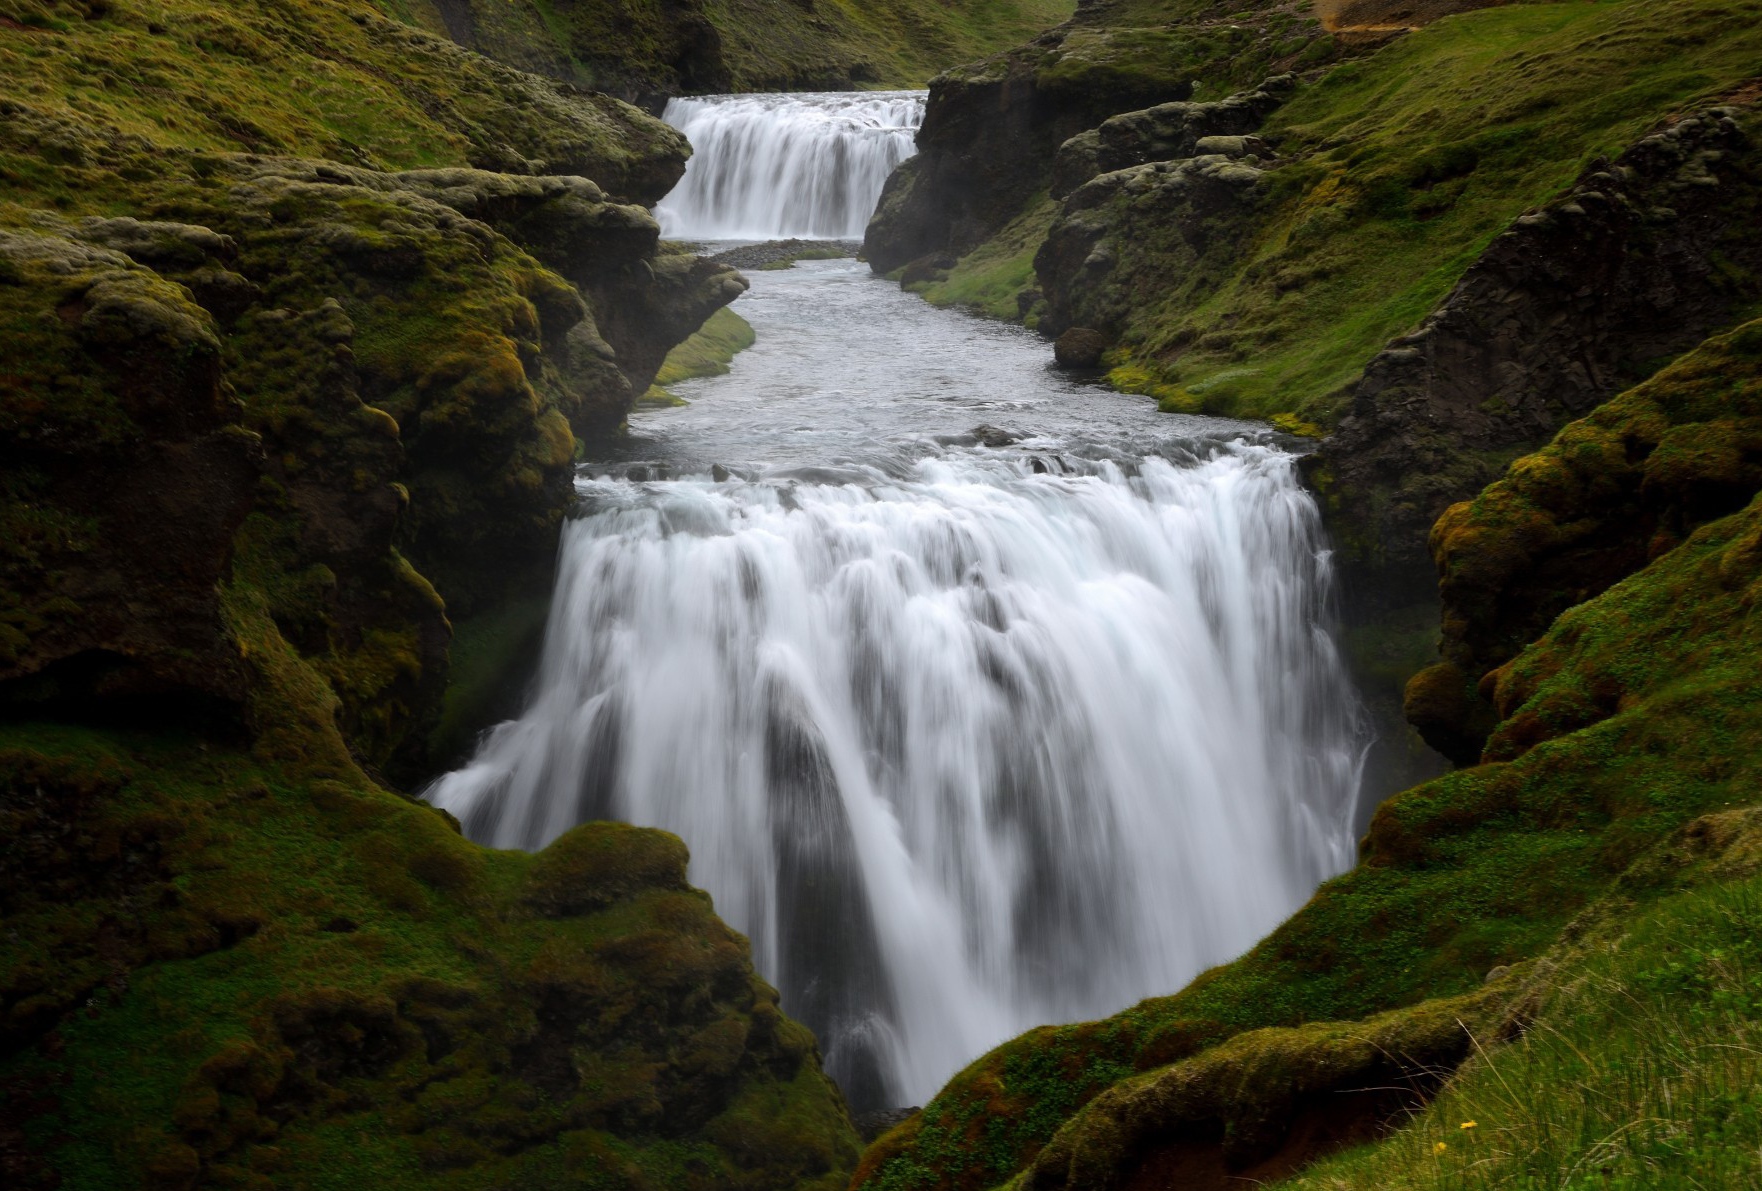 Bildershow: Island begeistert mit spektakulären Wasserfällen